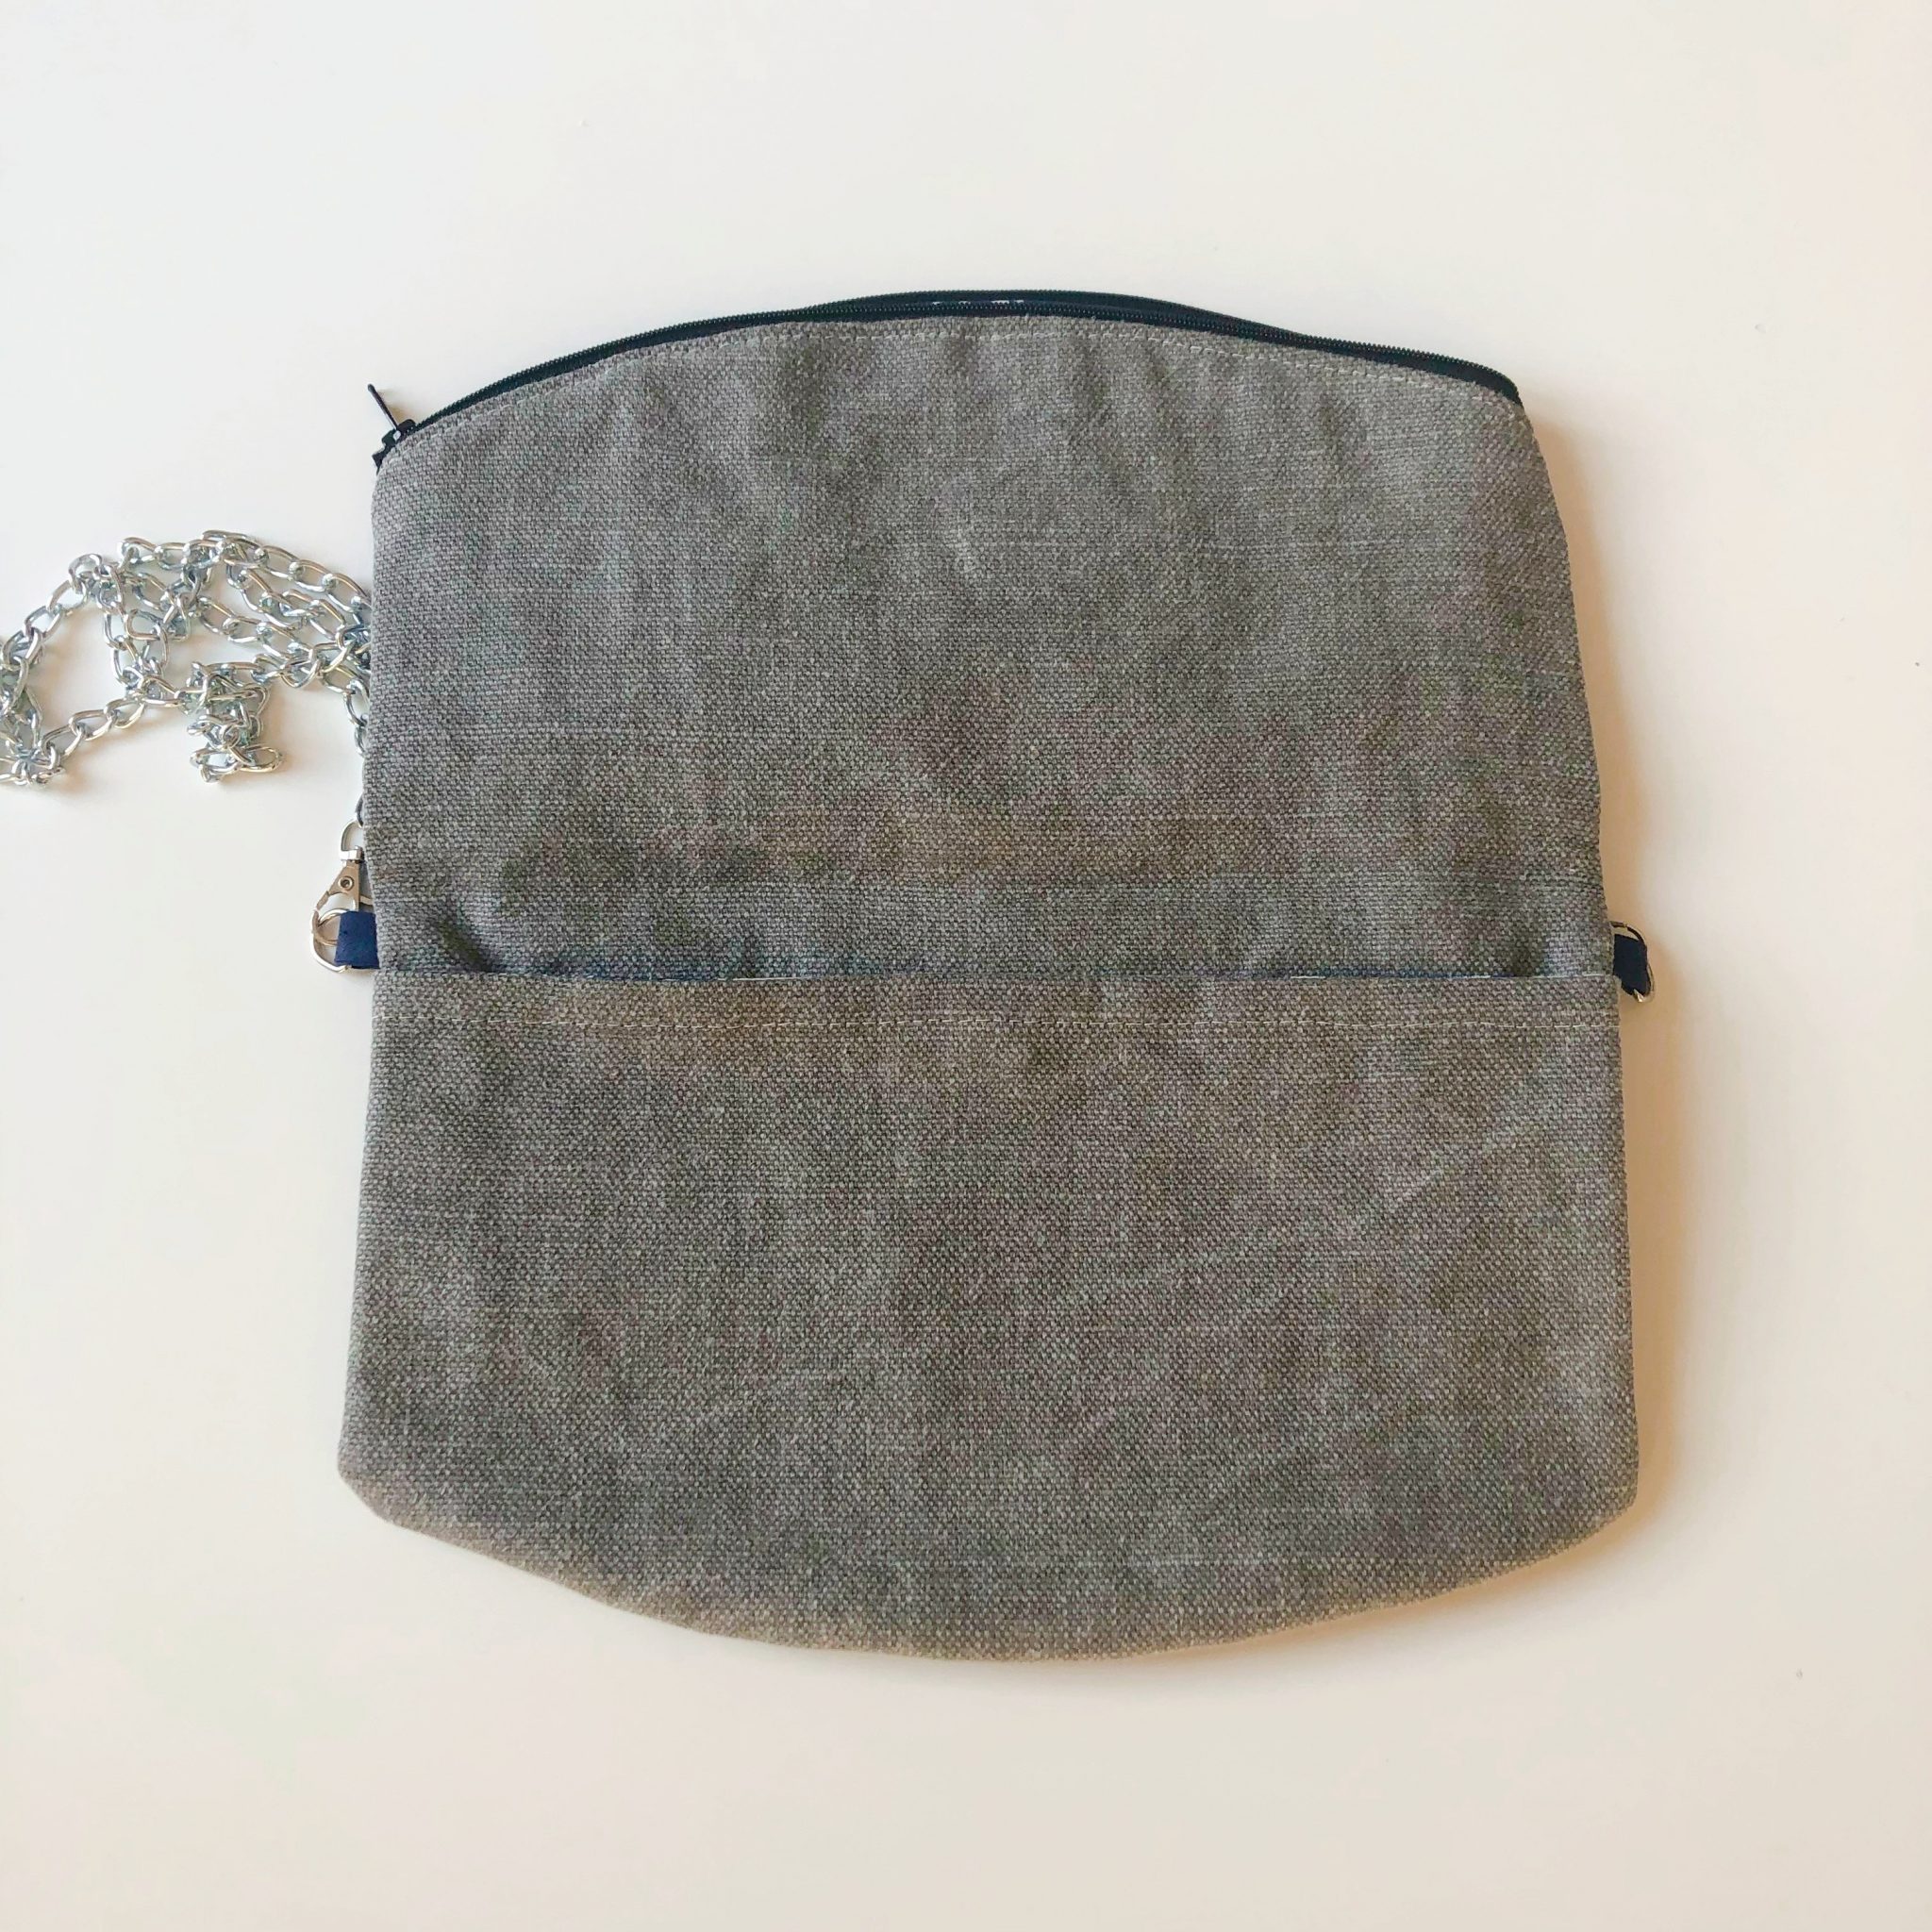 Sac bandoulière de la marque Bleu Souris - bleu et argent ouvert -sac bandoulière